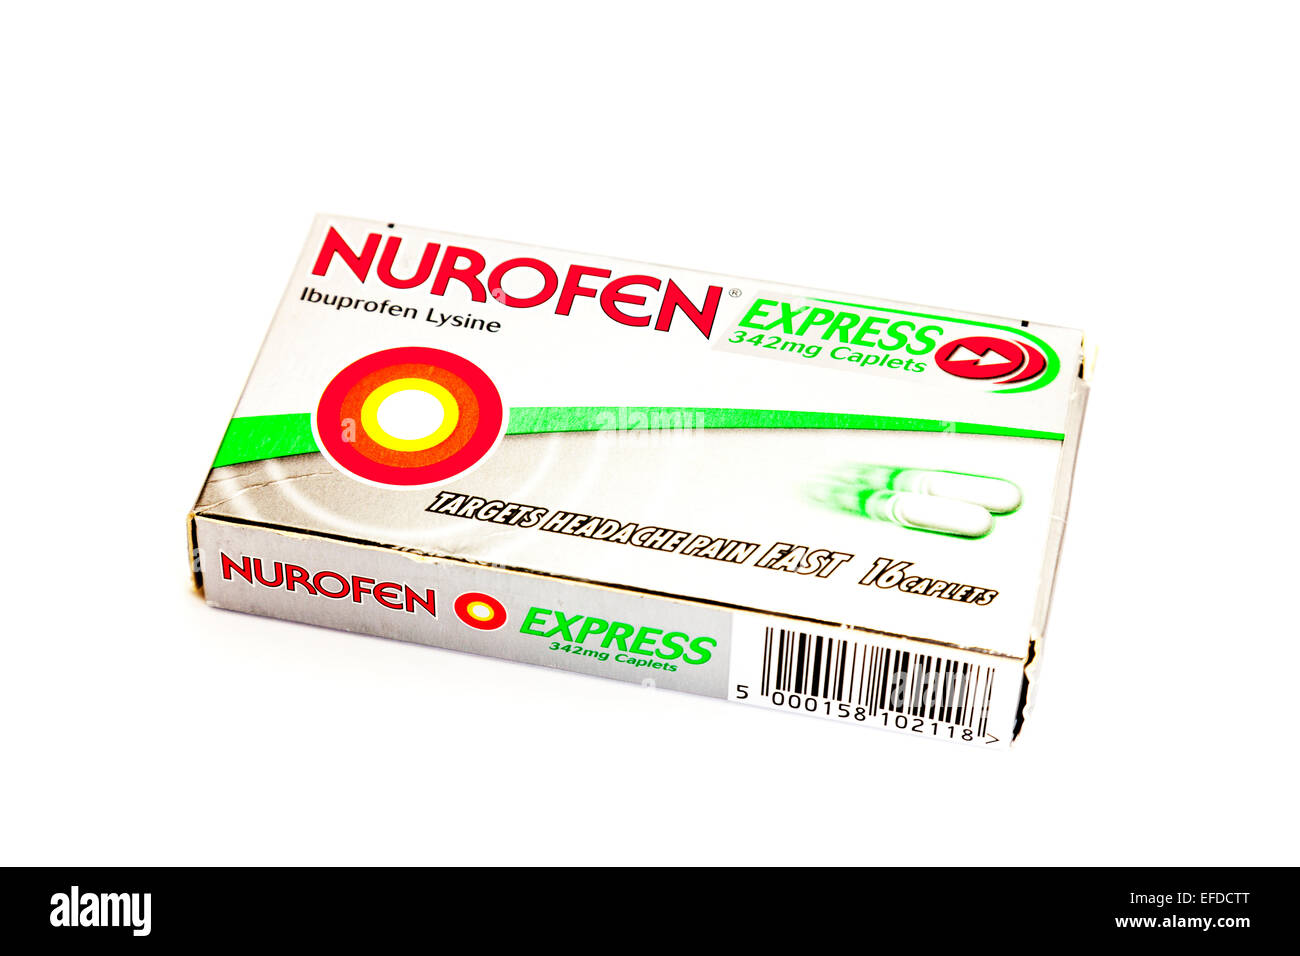 Nurofen compresse pacchetto scatola di ibuprofen lisina express caplet mal  di testa dolore remedy ritagliata uno spazio di copia sullo sfondo bianco  Foto stock - Alamy